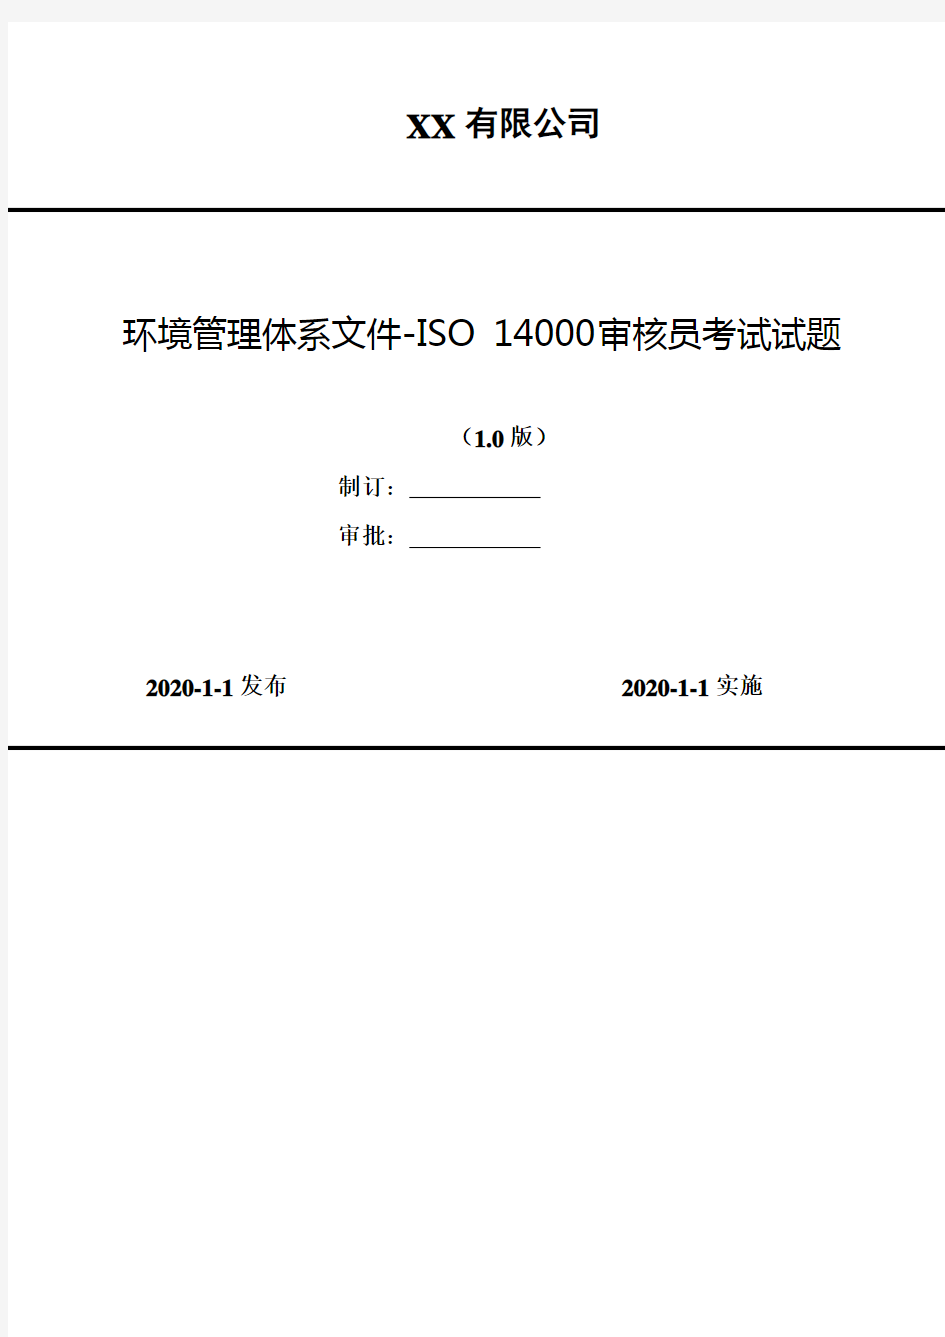 2020年 XX公司 环境管理体系文件-ISO 14000审核员考试试题